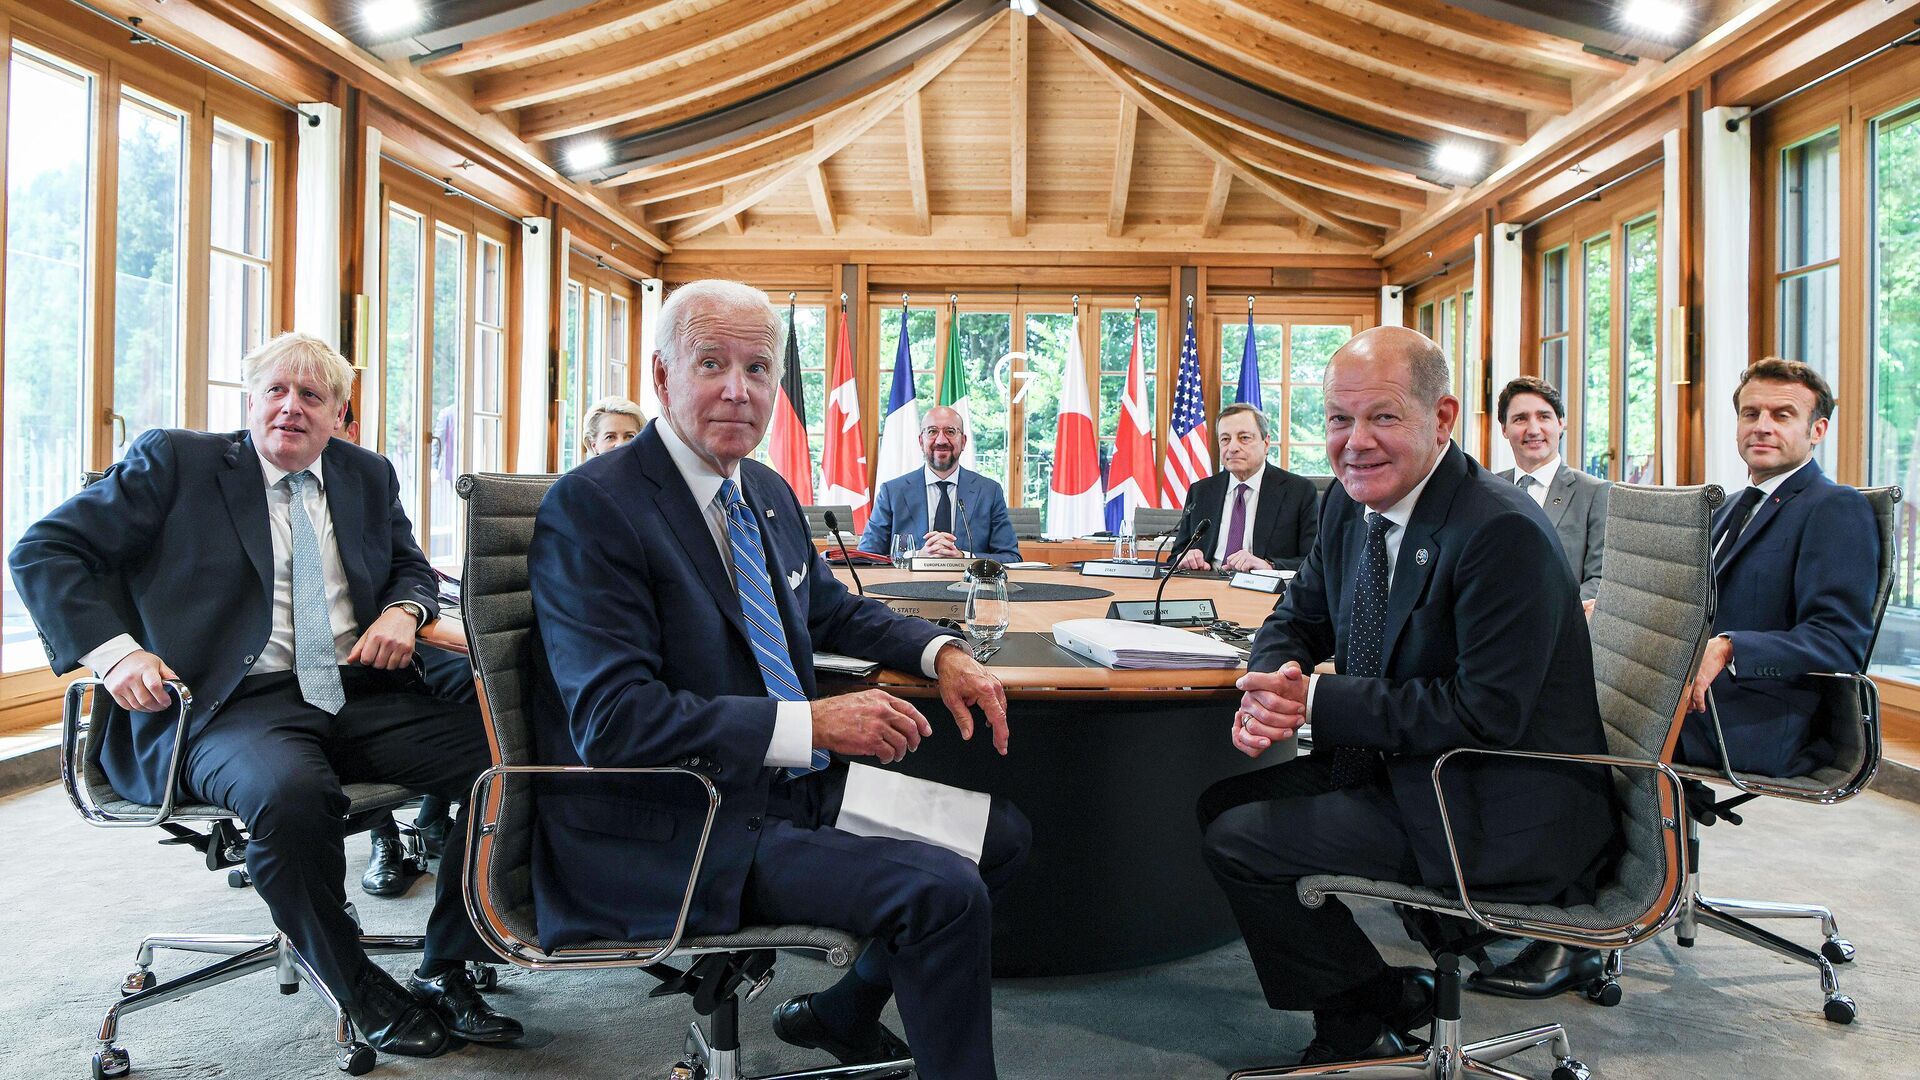 Президент США Джо Байден принимает участие в рабочем обеде с другими лидерами G7, чтобы обсудить формирование мировой экономики.  - Sputnik Грузия, 1920, 28.06.2022